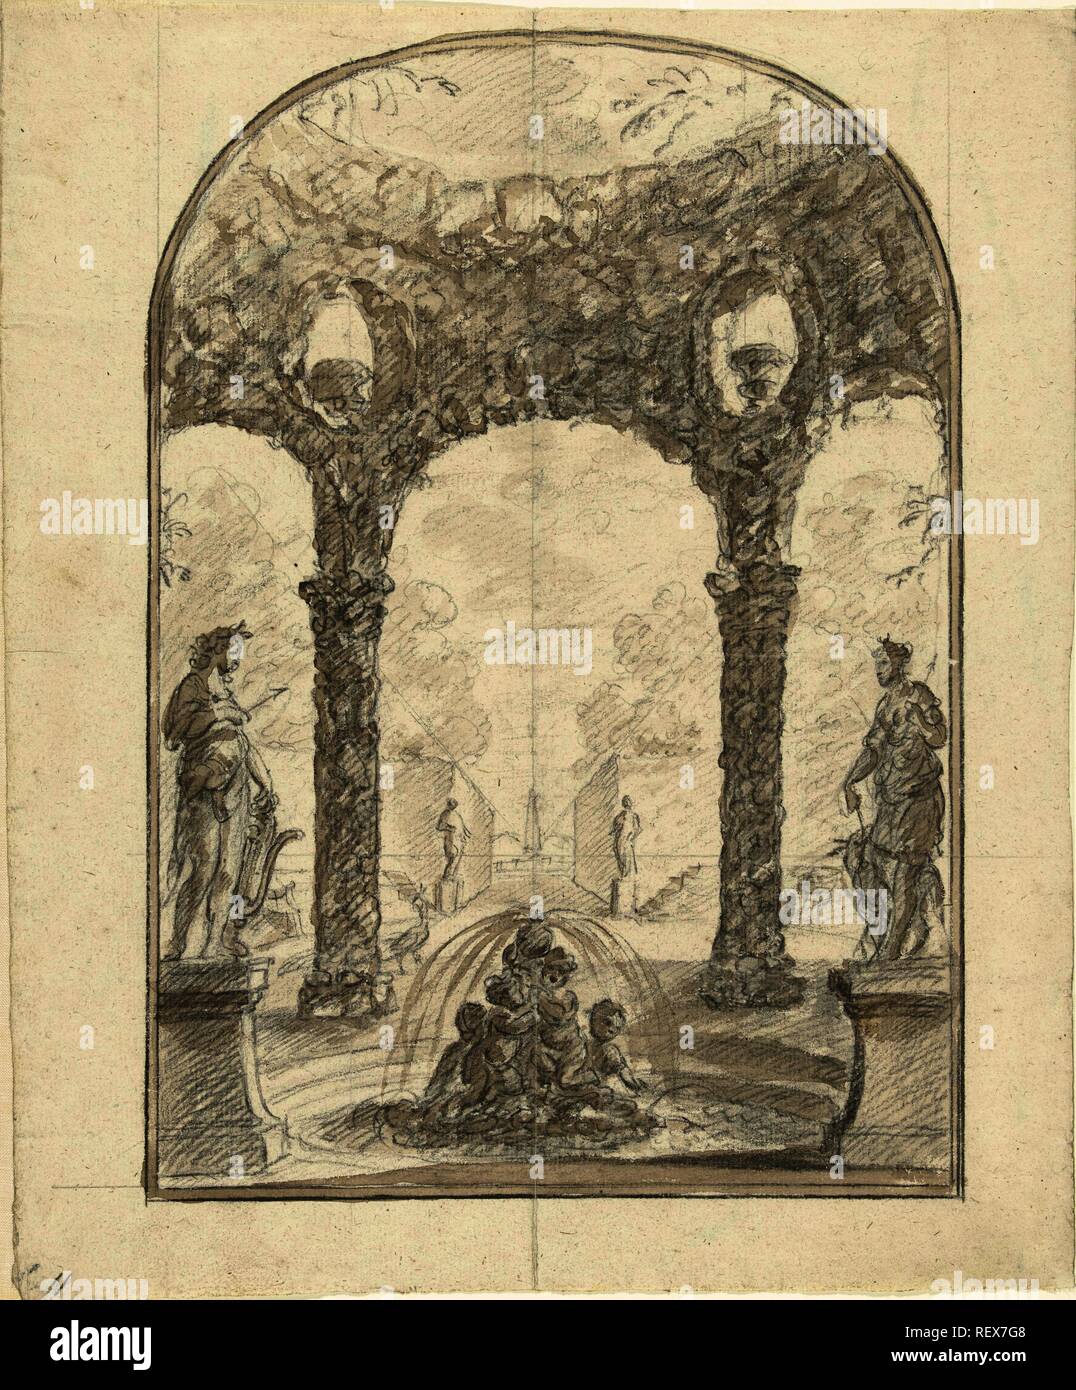 Vista di un giardino con una fontana con statue di Apollo e Diana. Relatore per parere: Elias van Nijmegen. Dating: 1677 - 1755. Misurazioni: h 329 mm × W 272 mm. Museo: Rijksmuseum Amsterdam. Foto Stock